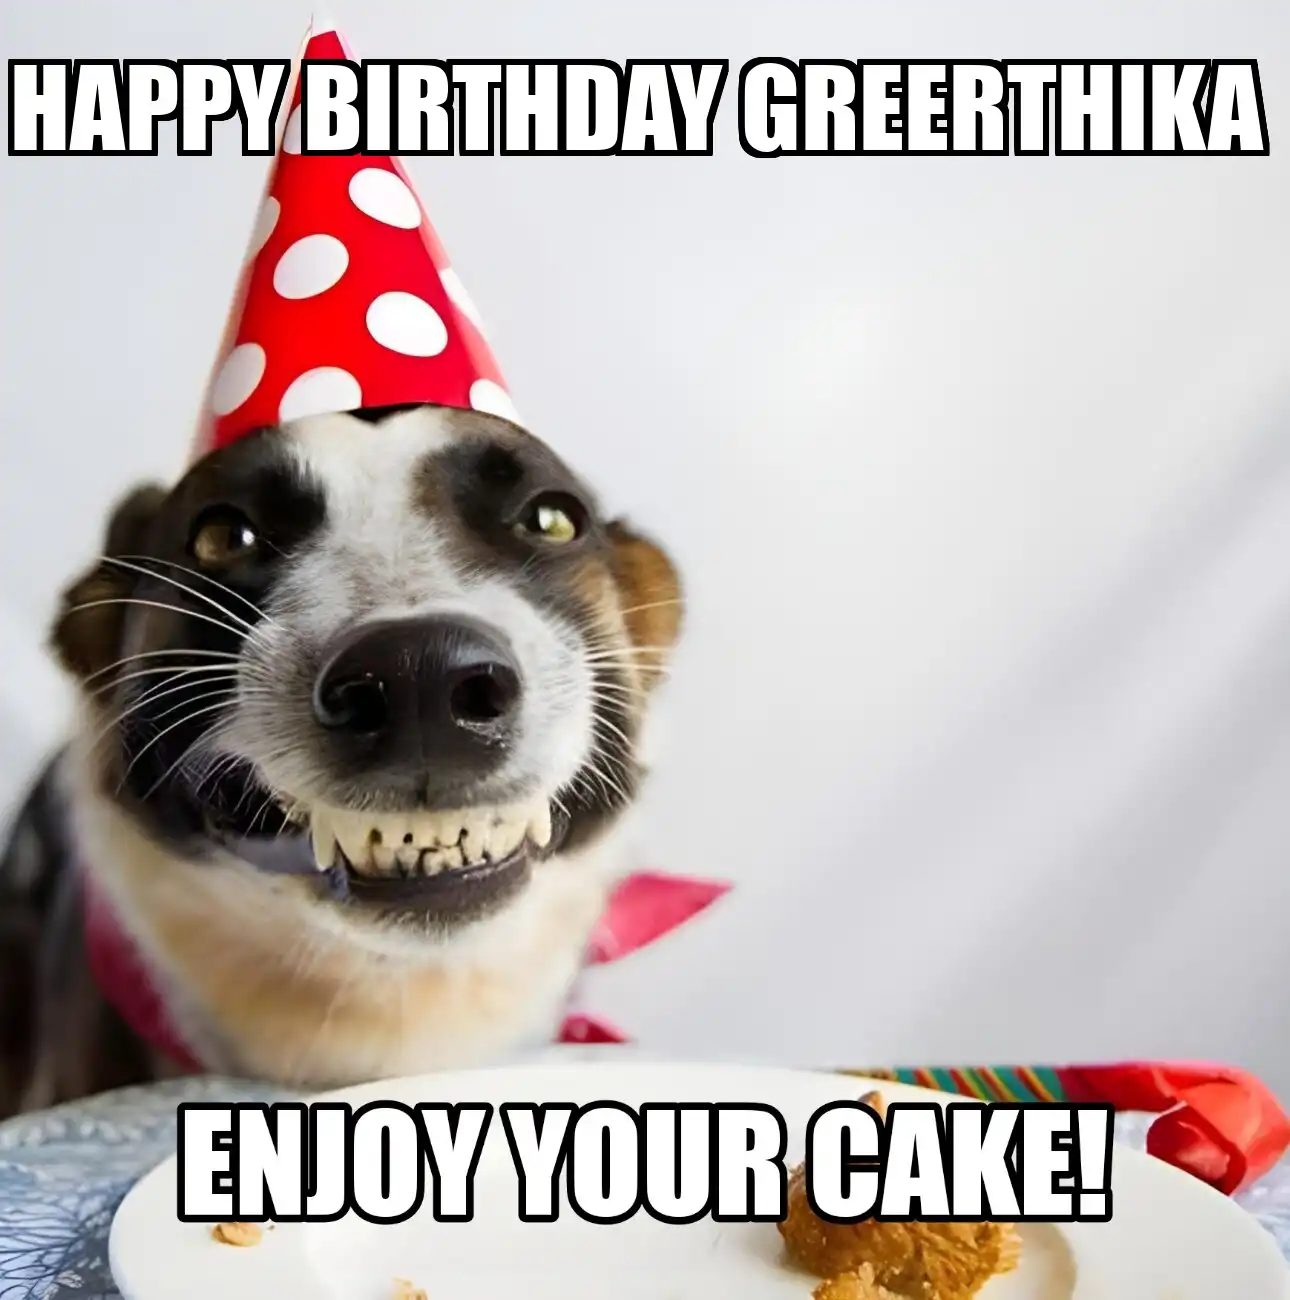 Happy Birthday Greerthika Enjoy Your Cake Dog Meme